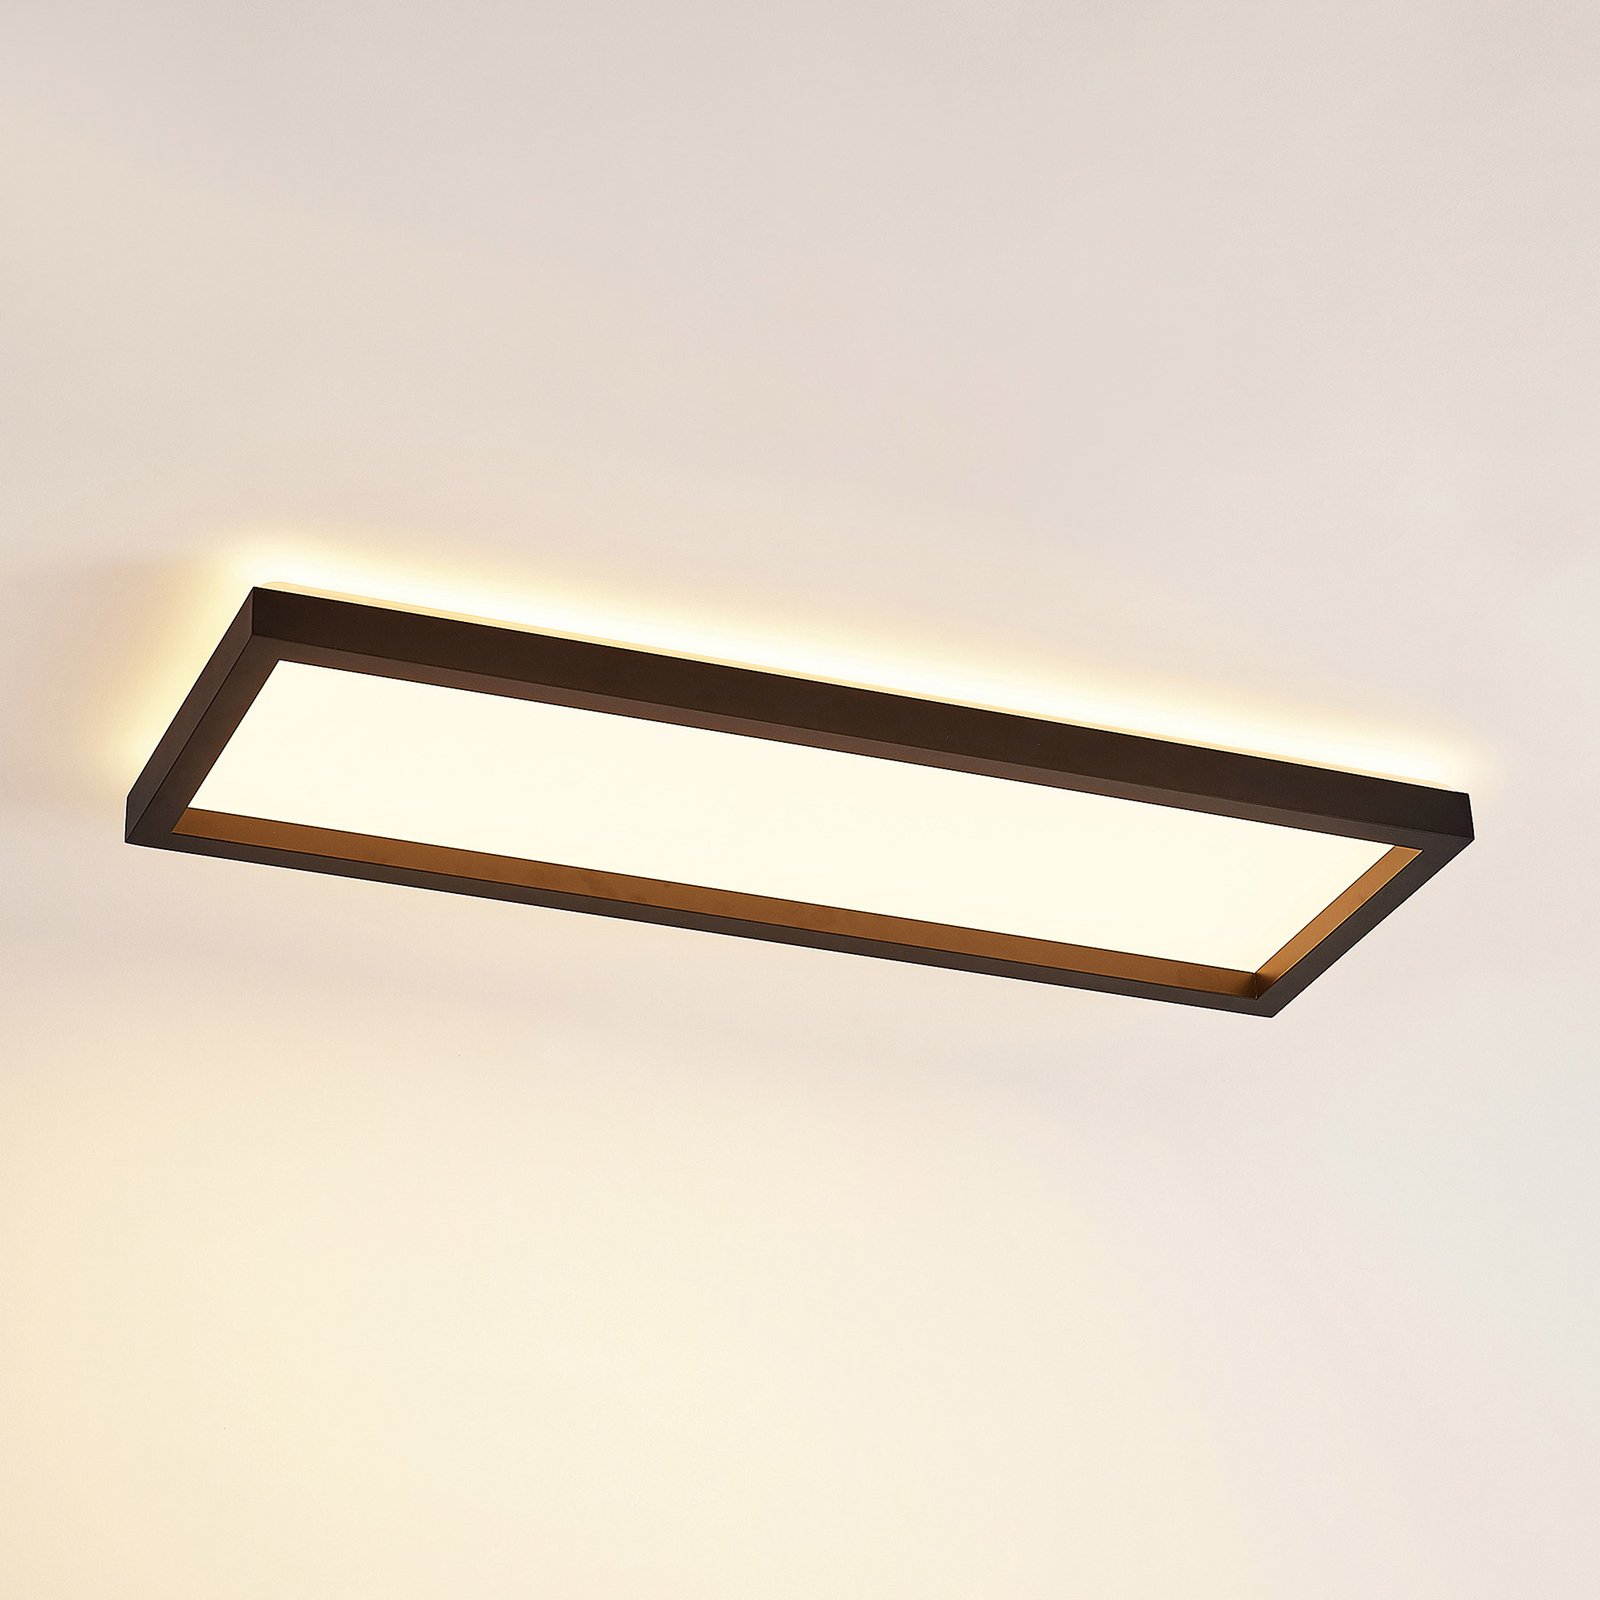 Prios Avira LED ceiling light, rectangular